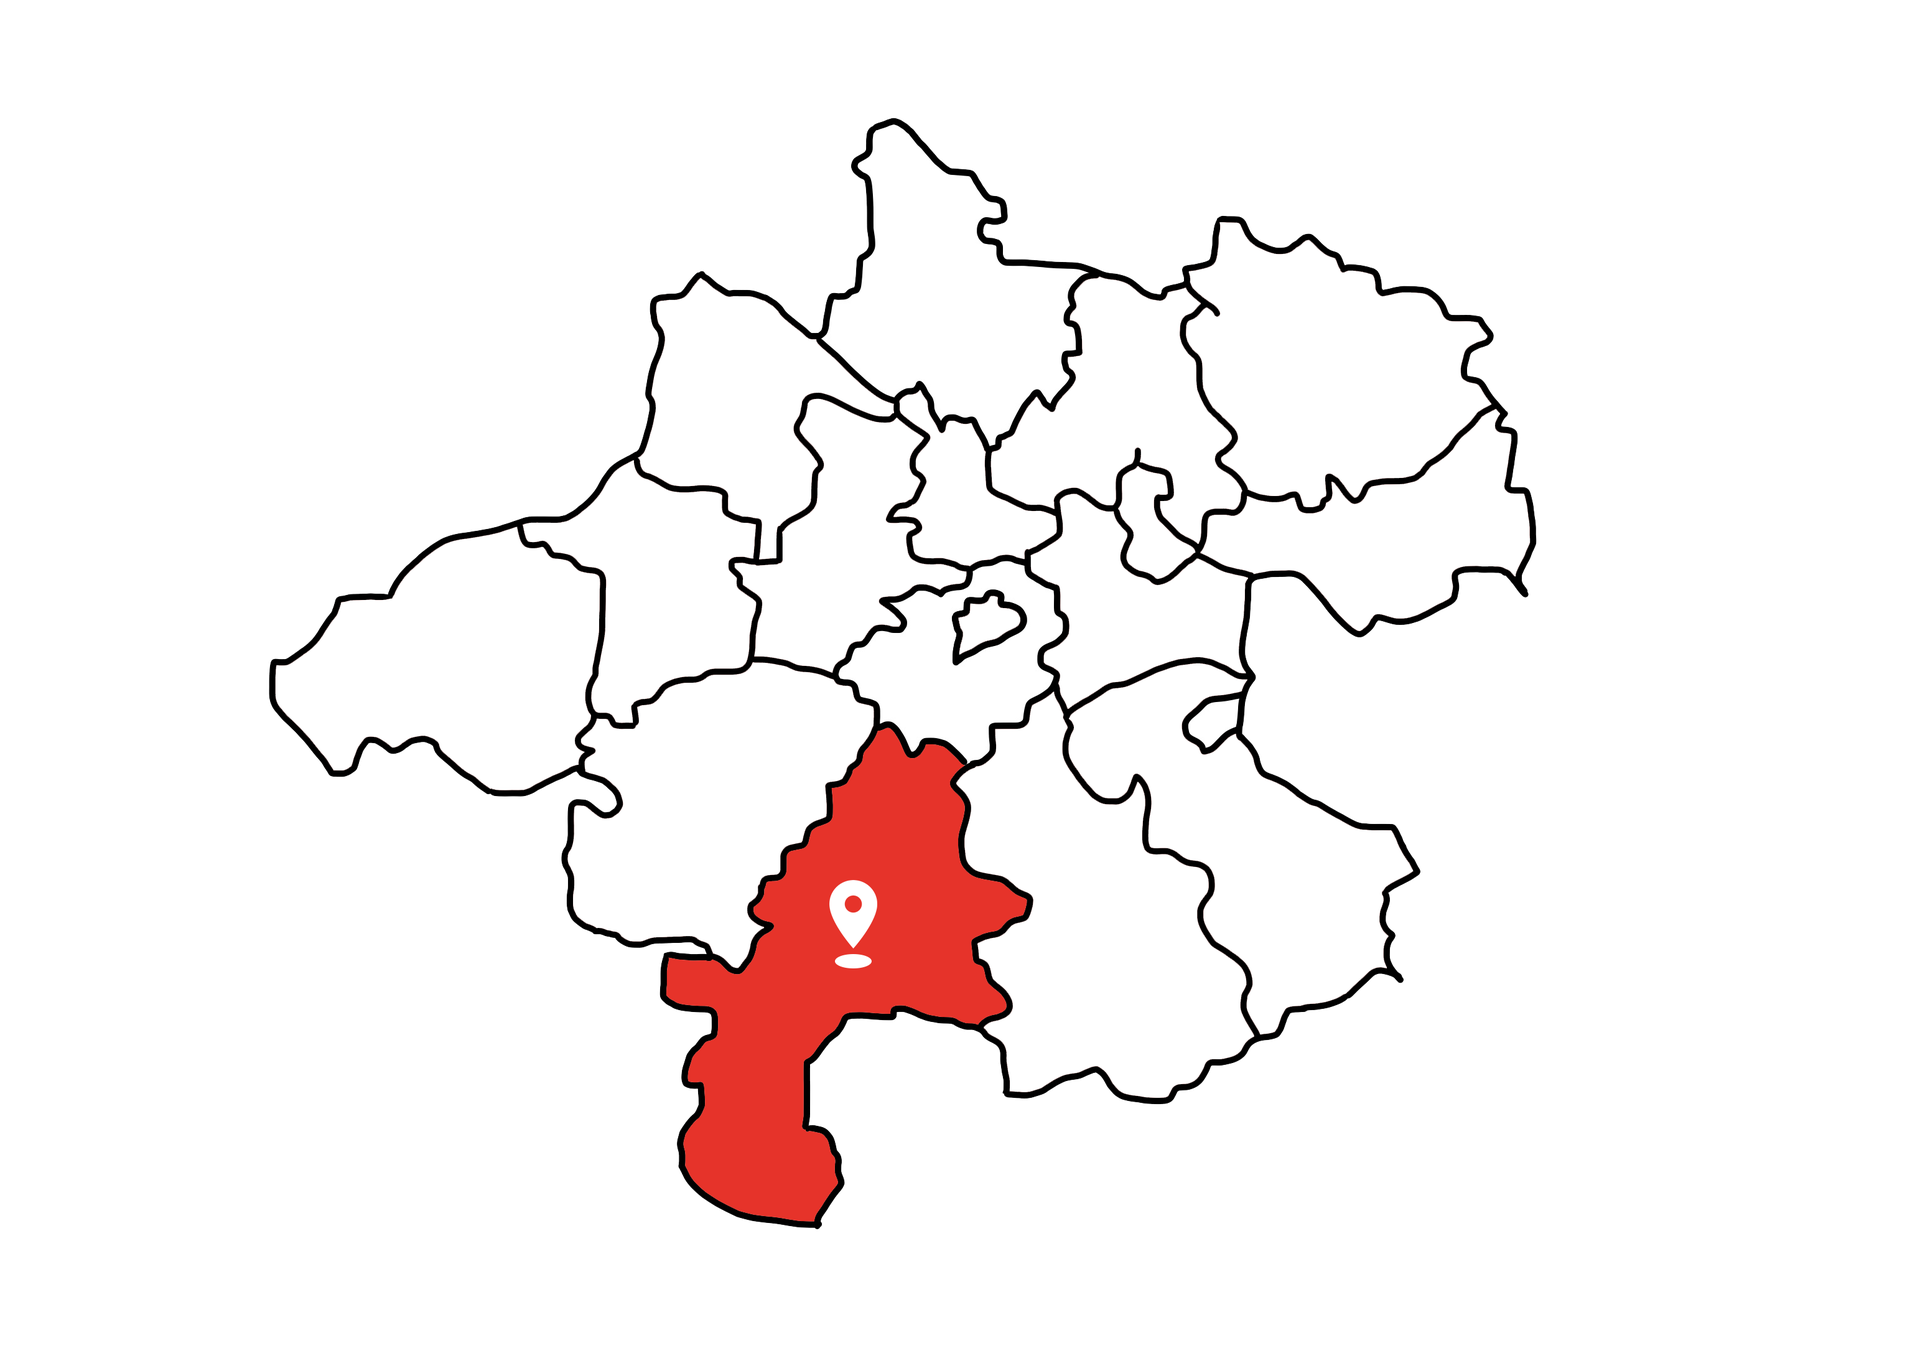 Eine Landkarte die Oberösterreich zeigt. Der Bezirk Gmunden ist rot markiert. Die restlichen Bezirke sind weiß.